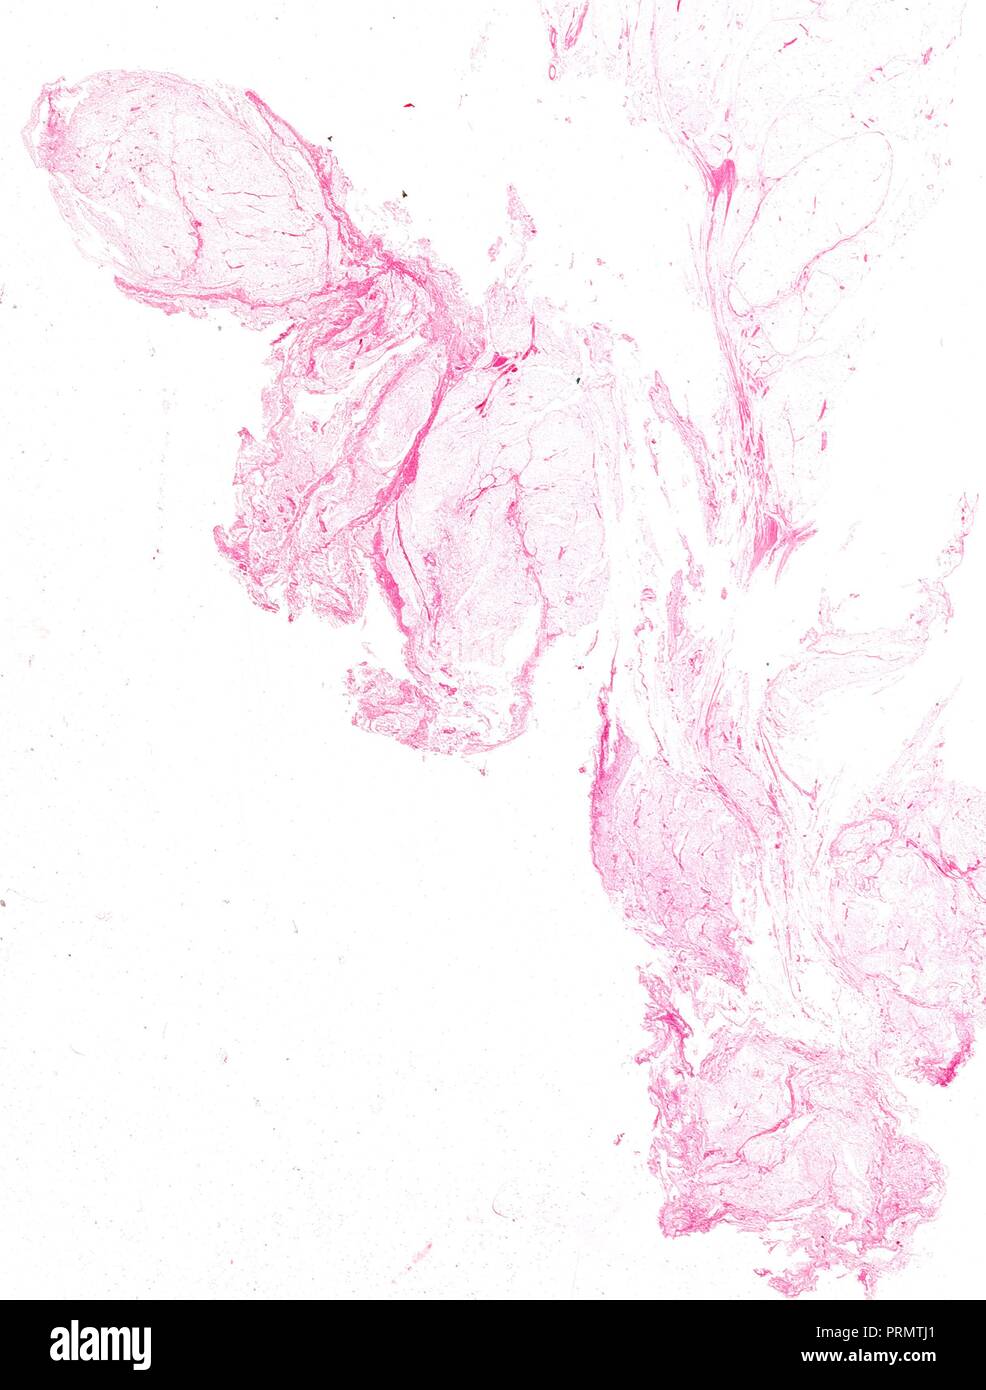 Des tranches de tissu humain, close-up des organes intérieurs. Banque D'Images